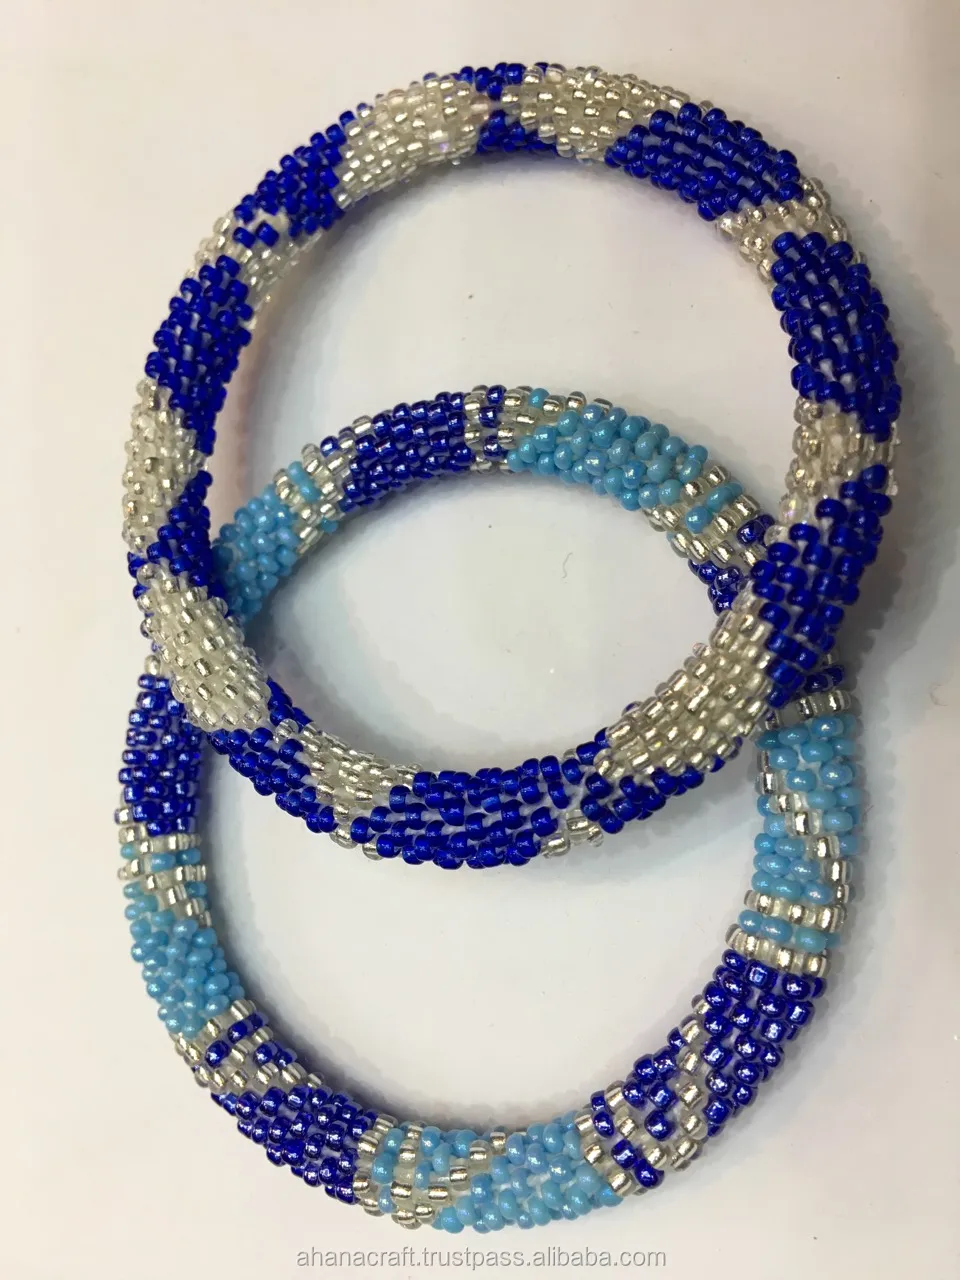 Made in NEPAL Crochet Woven Handmade Glass seed beaded Bangle❤️ Bracelet 